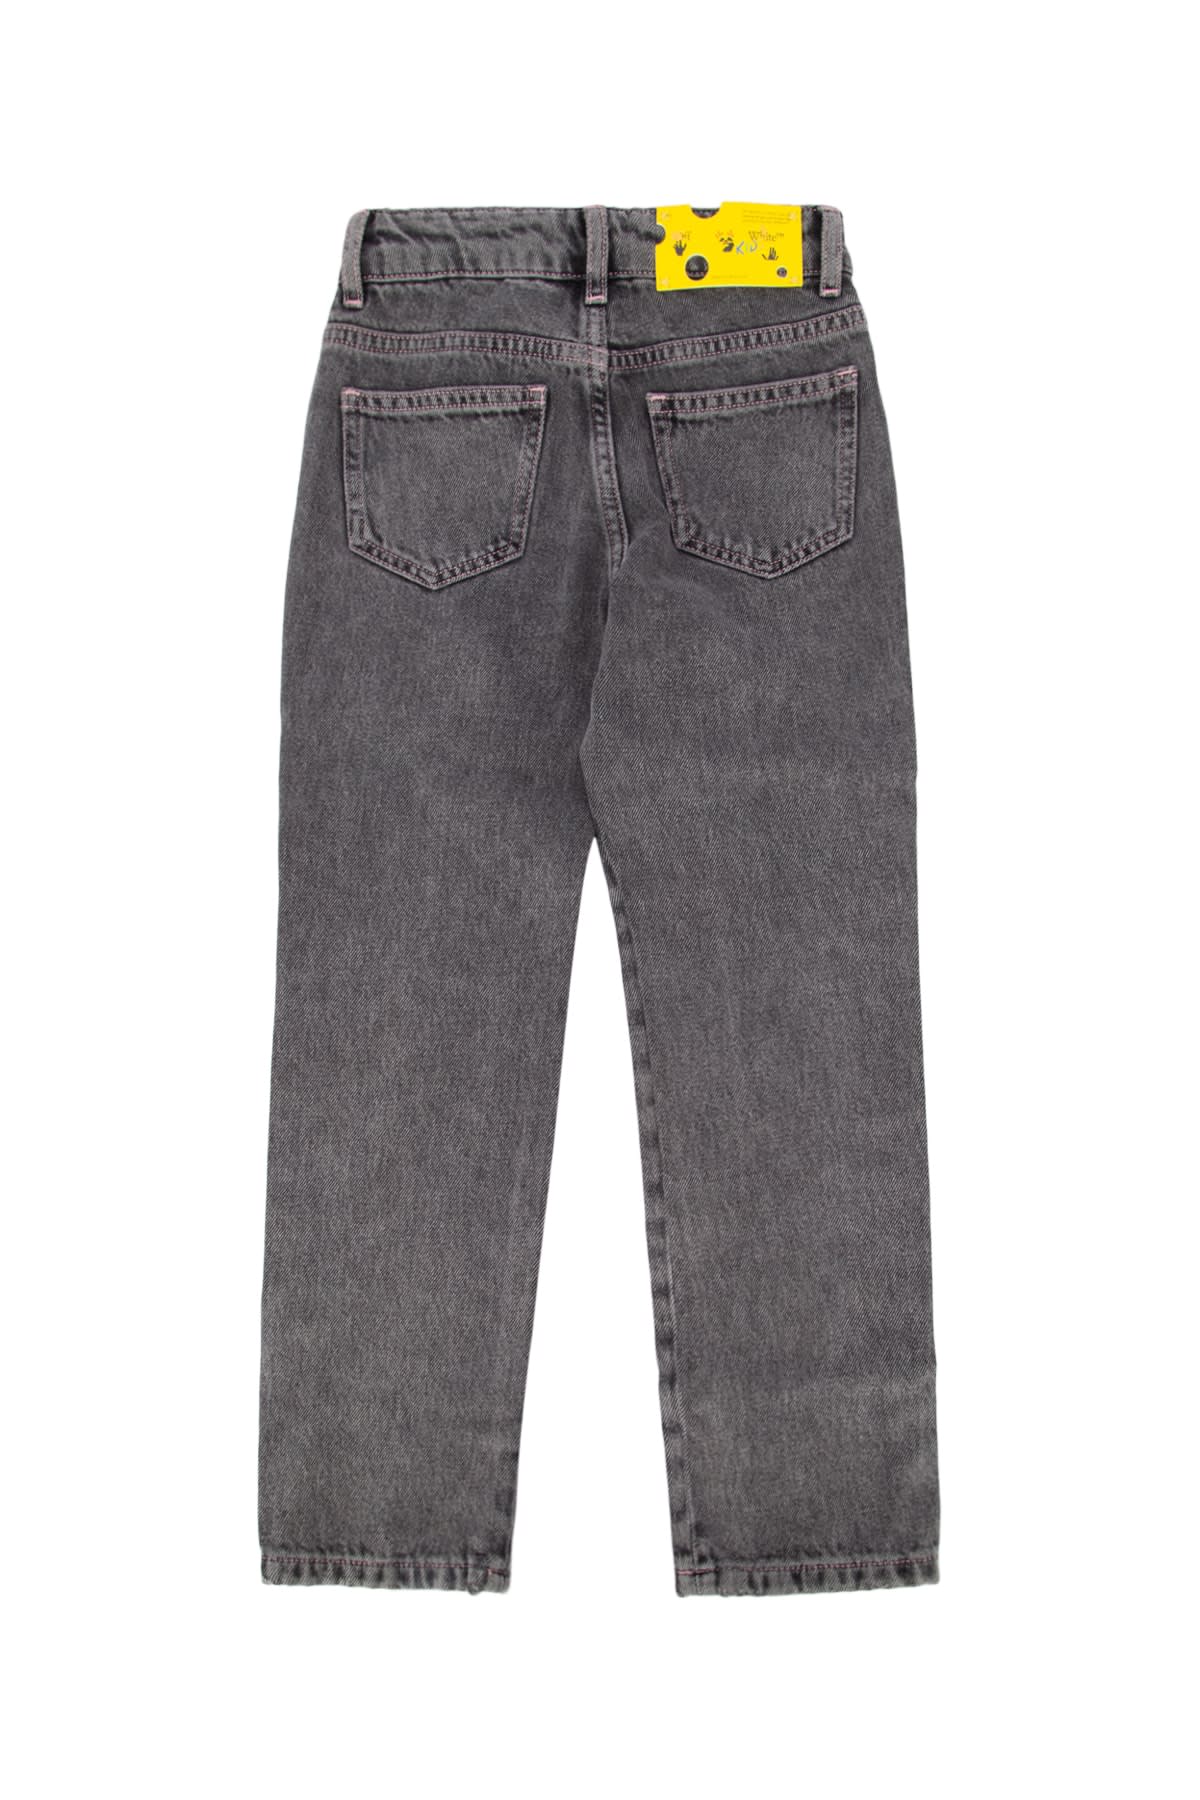 Off-white Kids' Pantalone In Greyblack